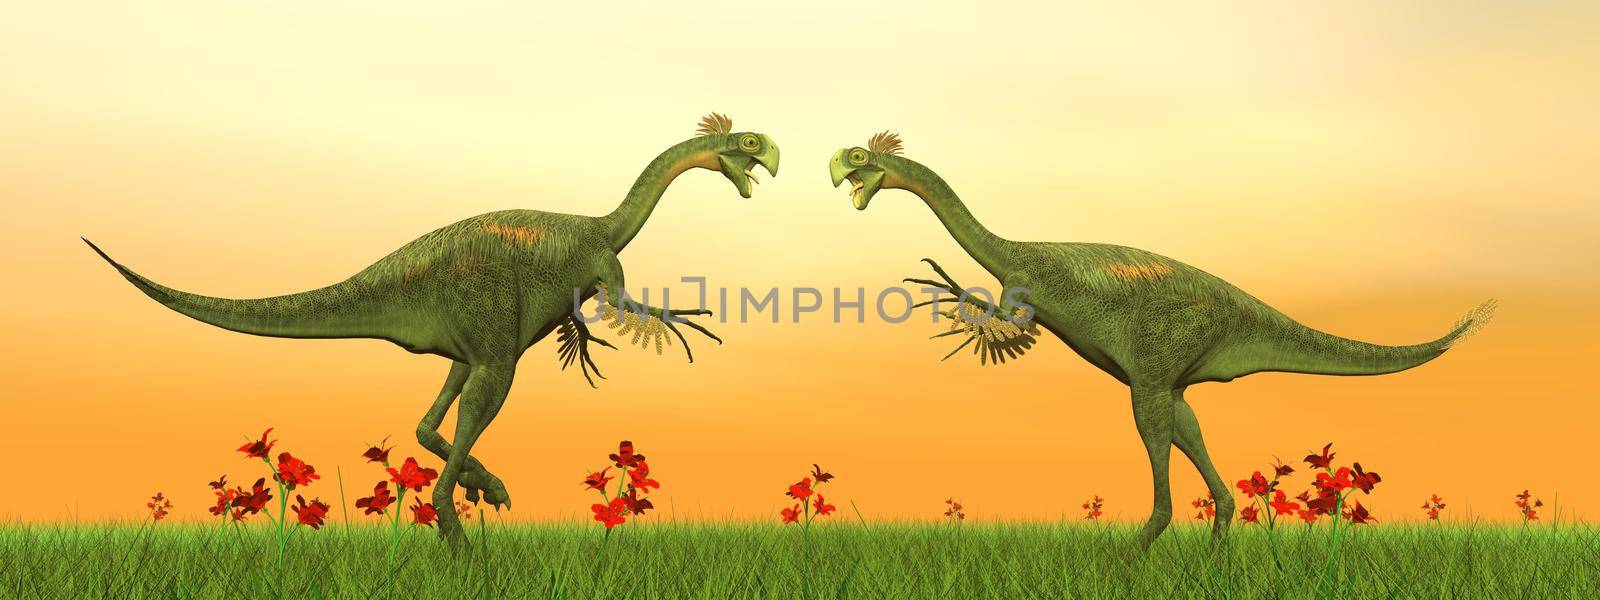 Gigantoraptor dinosaurs fight - 3D render by Elenaphotos21